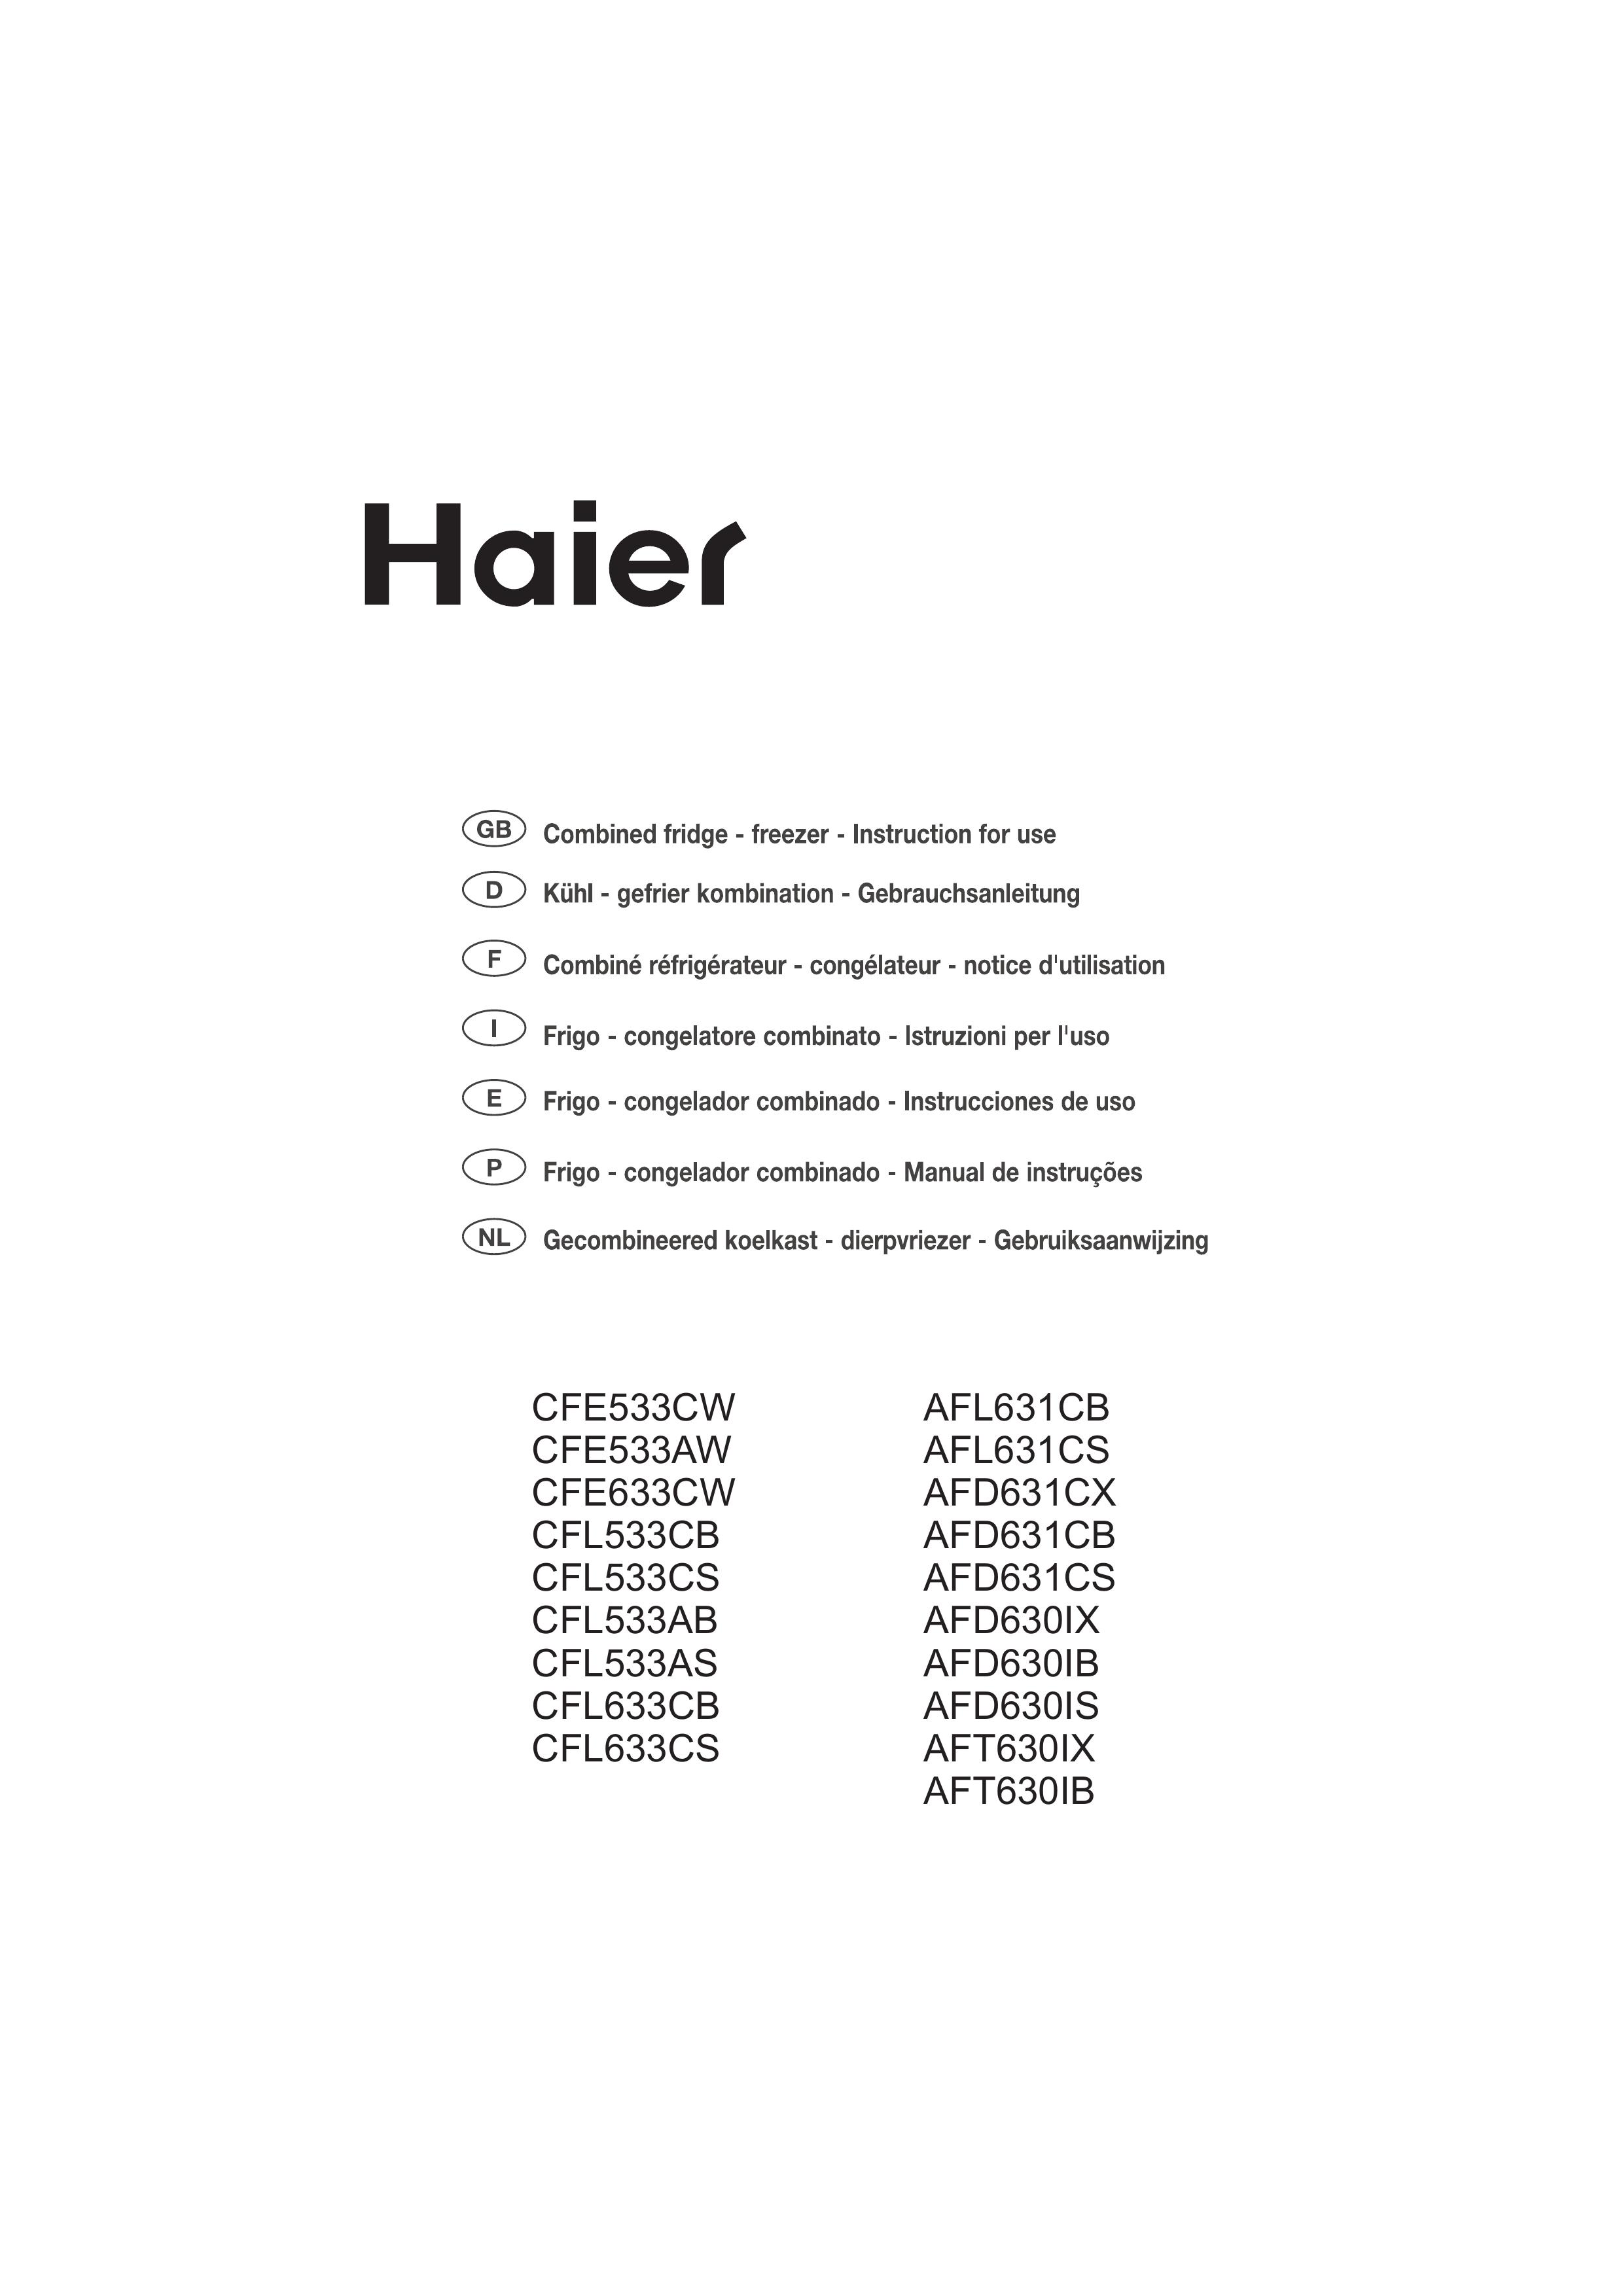 Haier AFD631CB Refrigerator User Manual